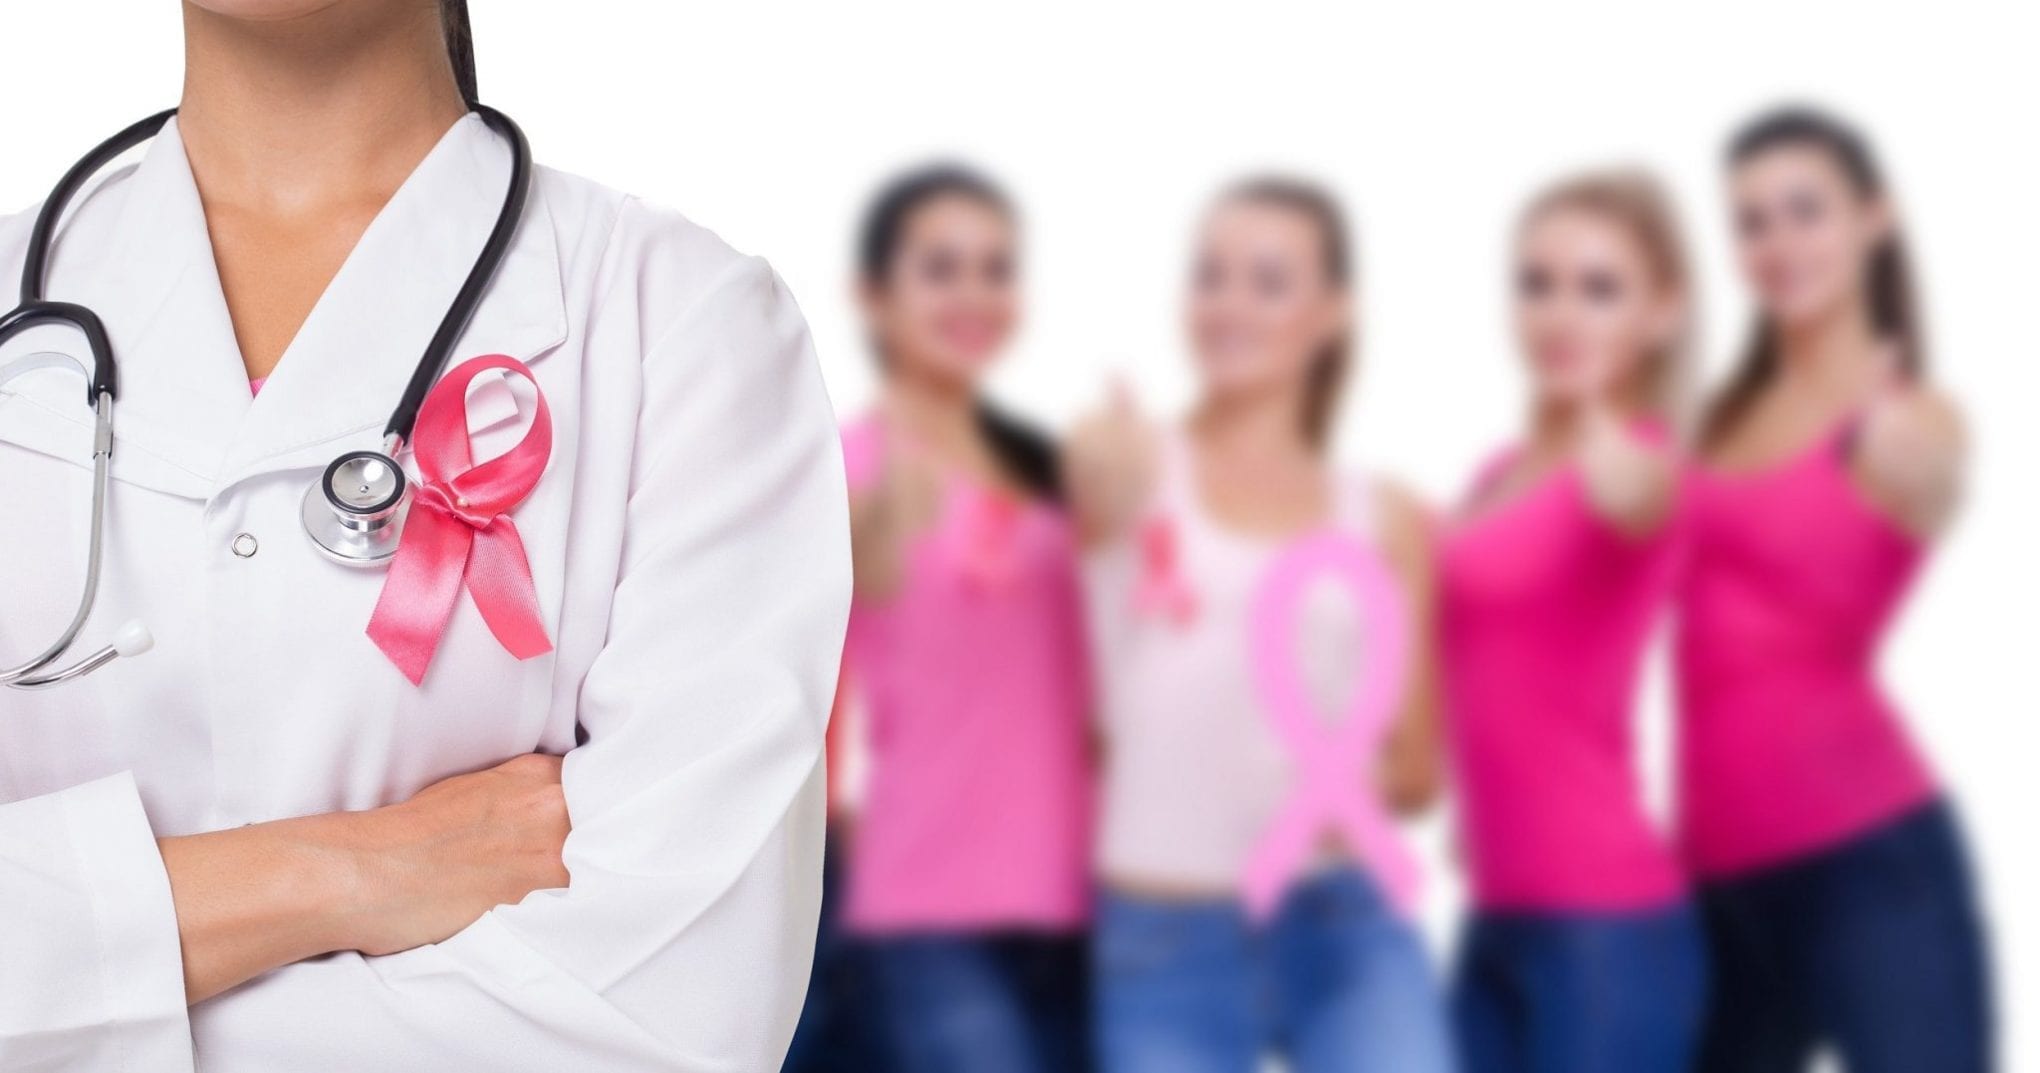 La probabilidad de sobrevivir al cáncer de mama ha aumentado un 40% en los últimos años, según iSalud.com